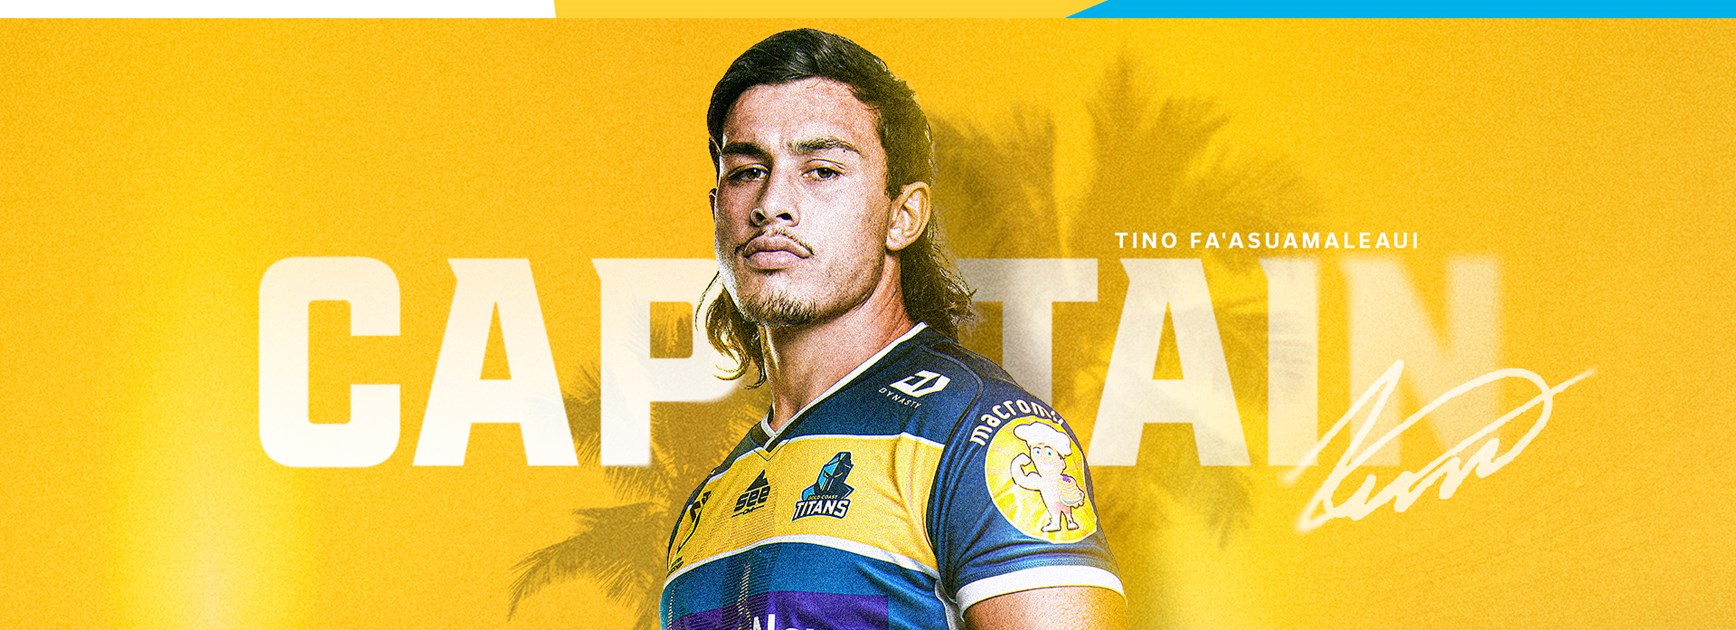 Fa'asuamaleaui to lead Titans: Tino named Captain for '22